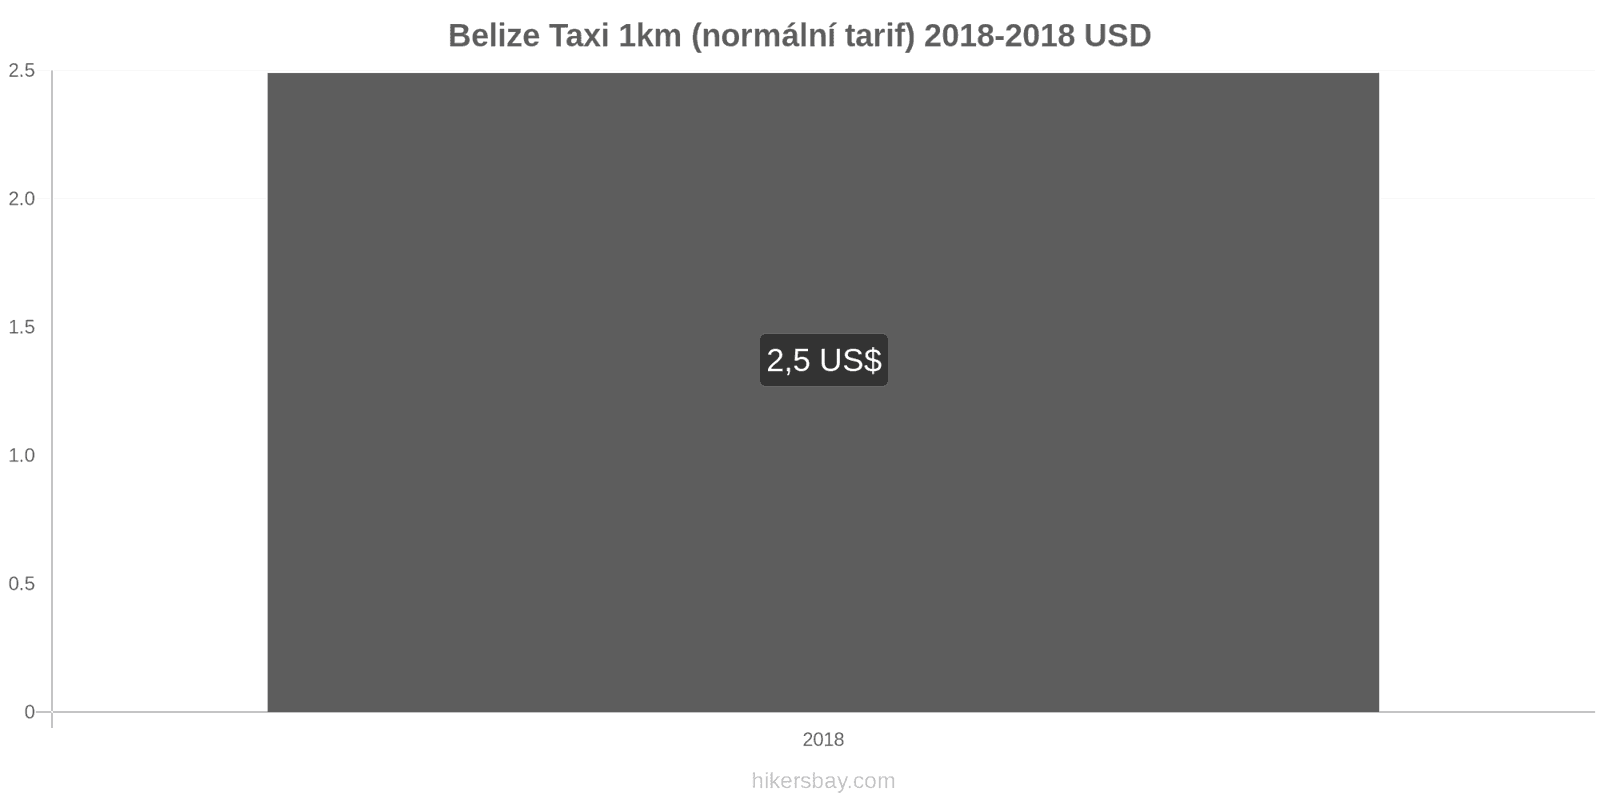 Belize změny cen Taxi 1km (normální tarif) hikersbay.com